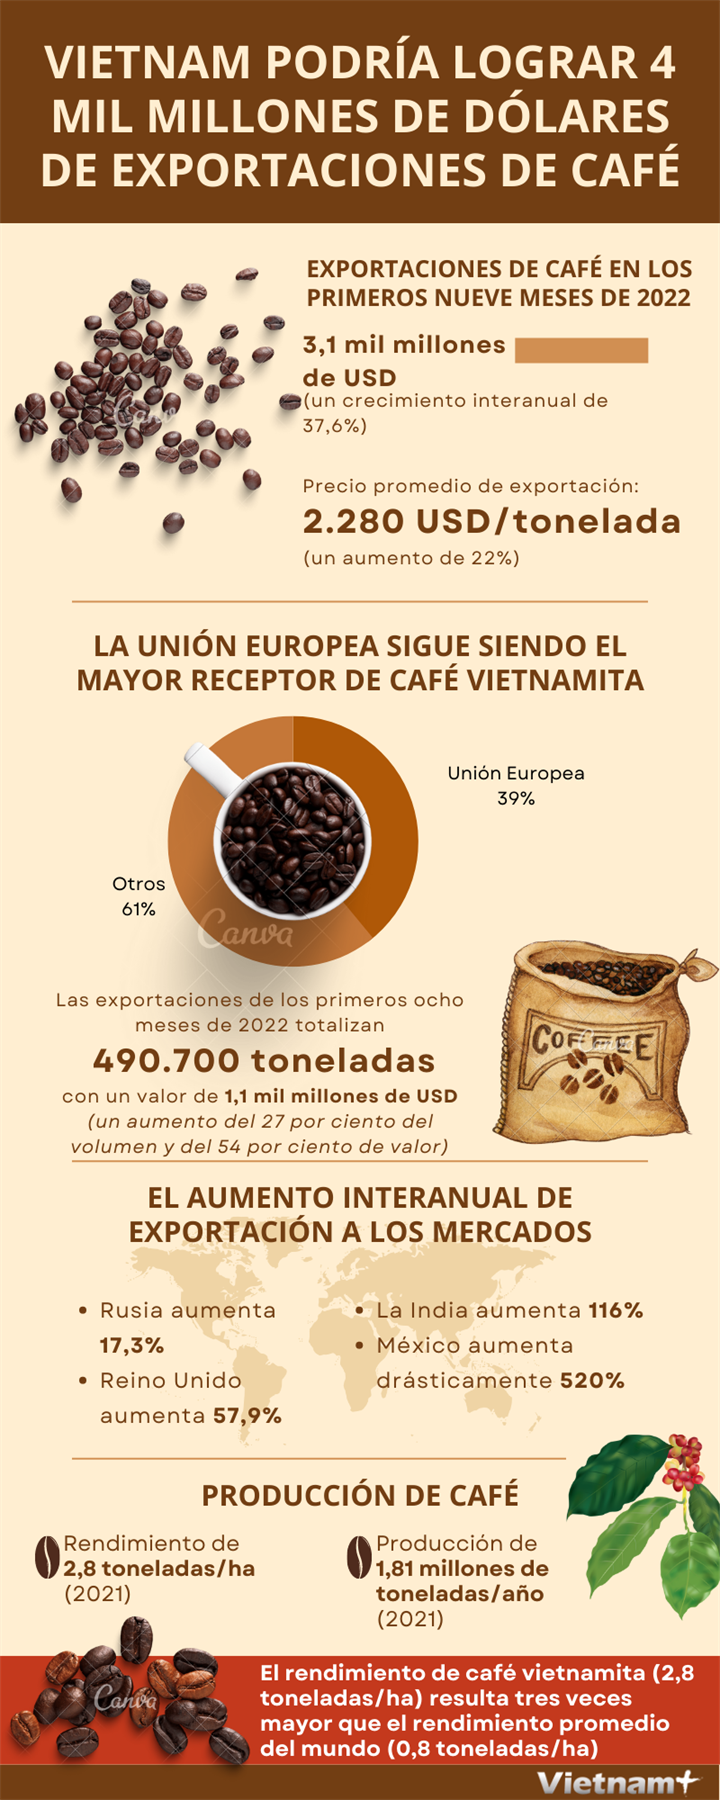 Vietnam podría lograr 4 mil millones de dólares de exportaciones de café